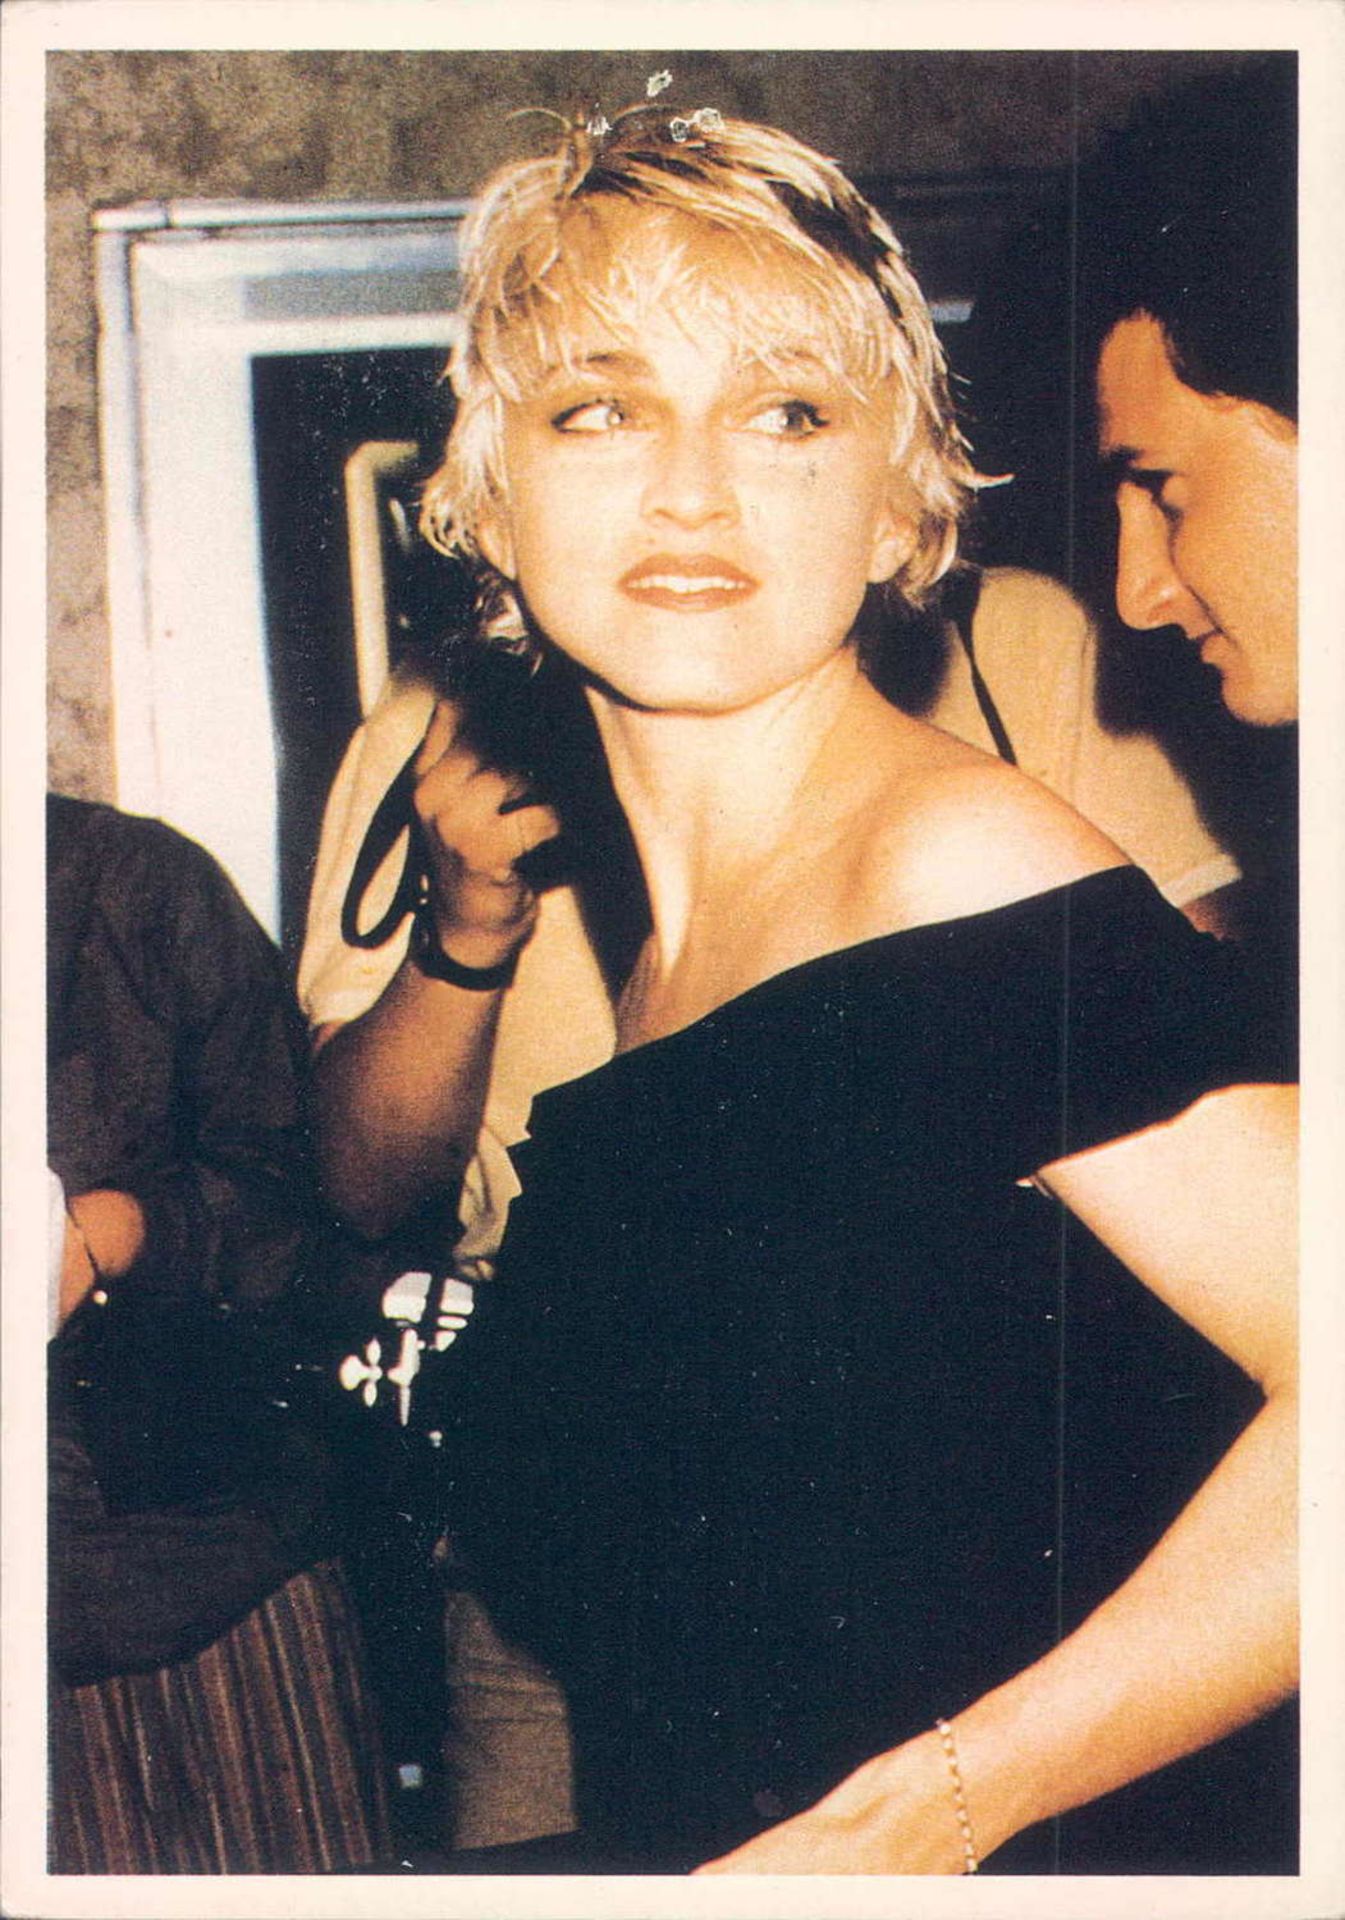 25 Star - Postkarten von Madonna. Alle verschiedene Motive.25 Star - Postcards by Madonna. All